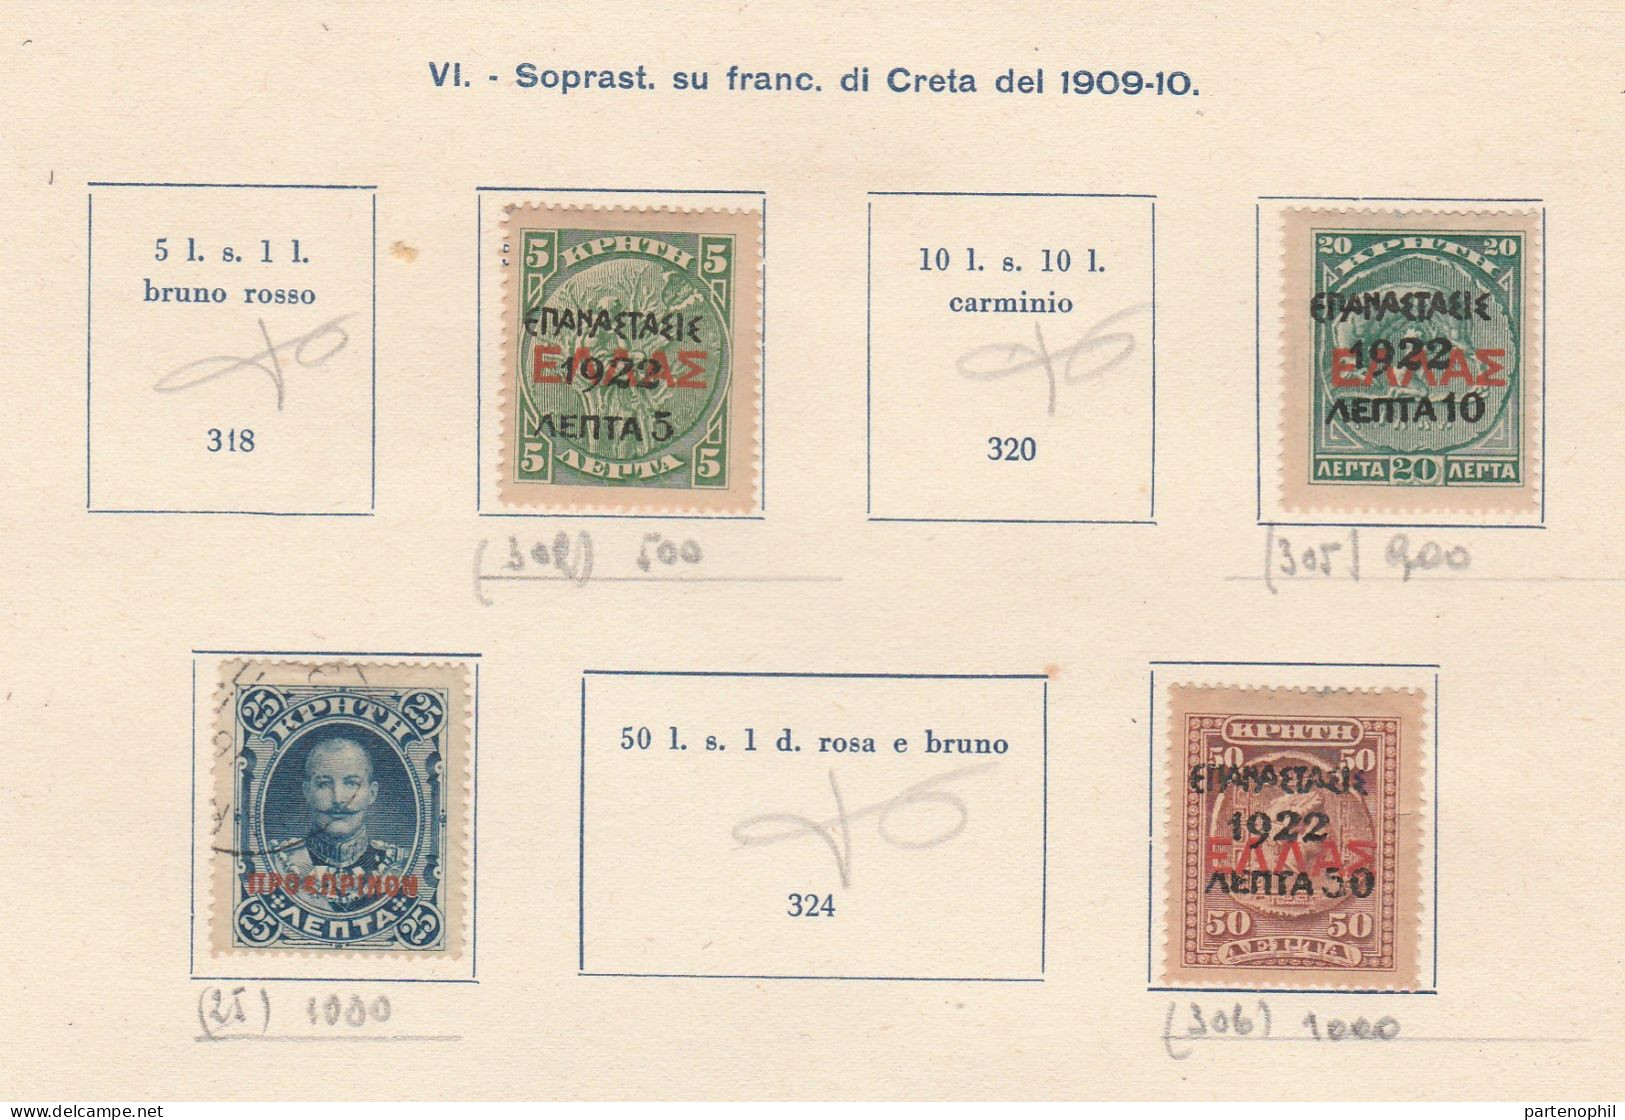 687 - Grecia 1862/1940 - Inizio di collezione di francobolli usati montata in fogli d’album, anche una piccola sezione d